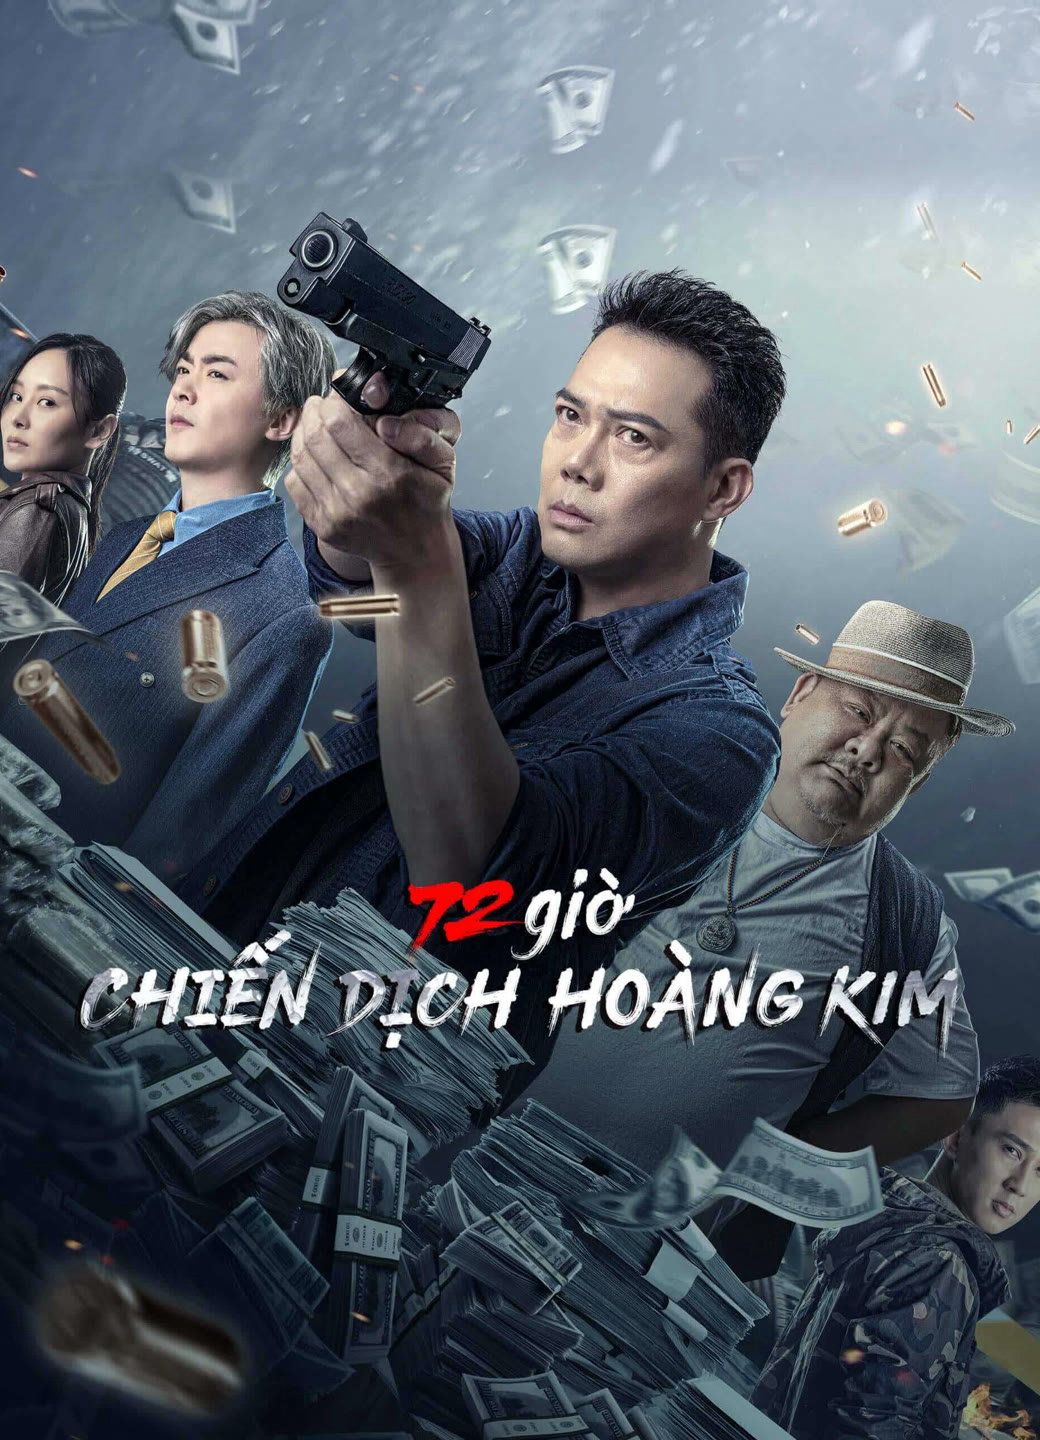 Xem Phim 72 giờ: Chiến Dịch Hoàng Kim (72 hour golden operation)